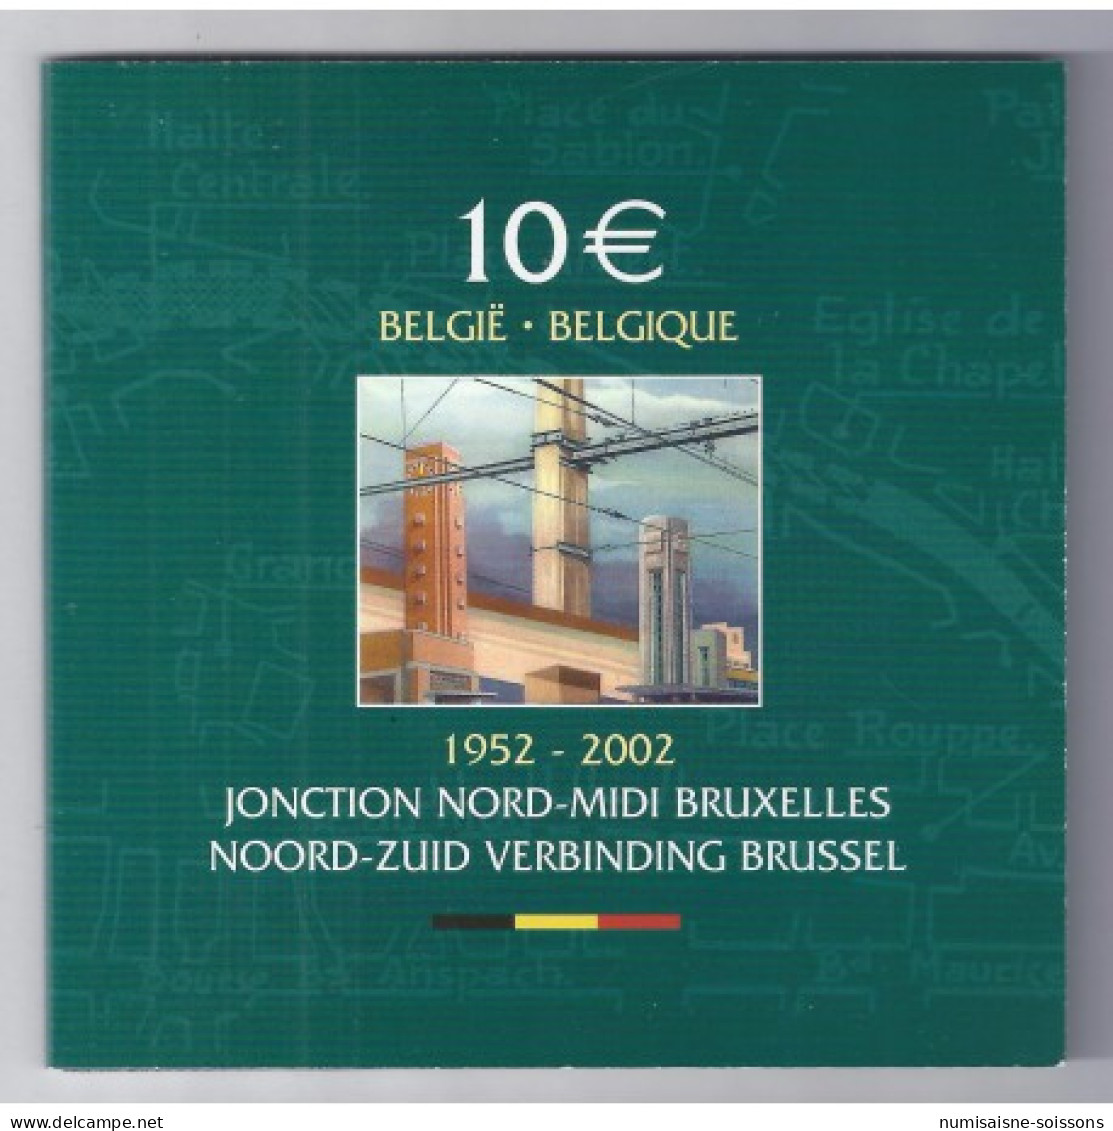 BELGIQUE - 10 EUROS 2002 - JONCTION NORD - MIDI BRUXELLES - BE - Belgique